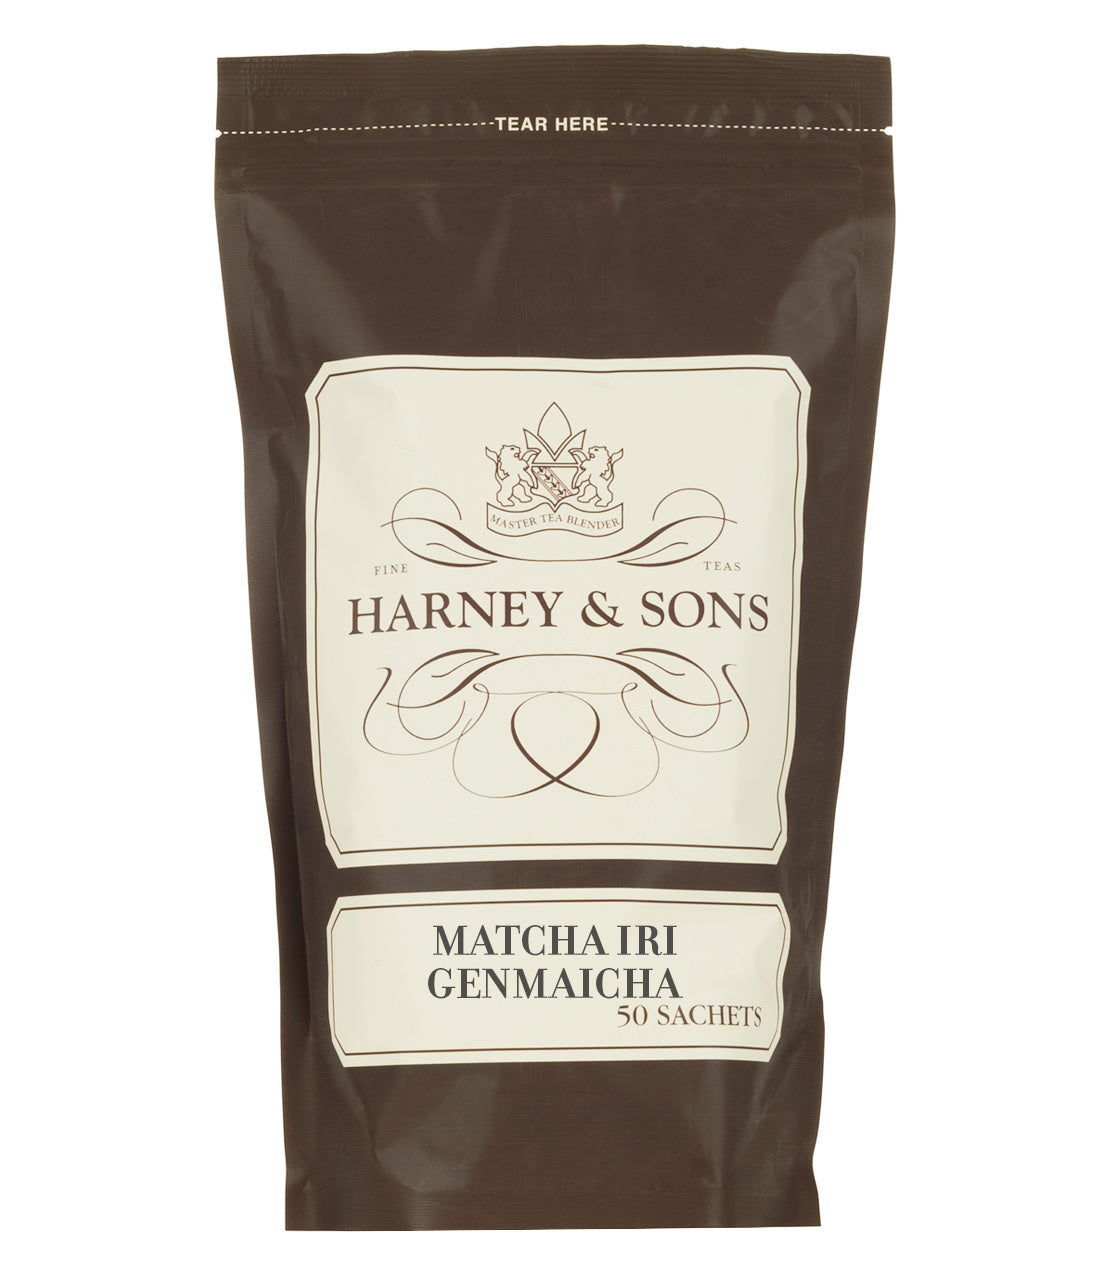 Matcha Iri Genmaicha, Bag of 50 Sachets - Sachets Bag of 50 Sachets - Harney & Sons Fine Teas